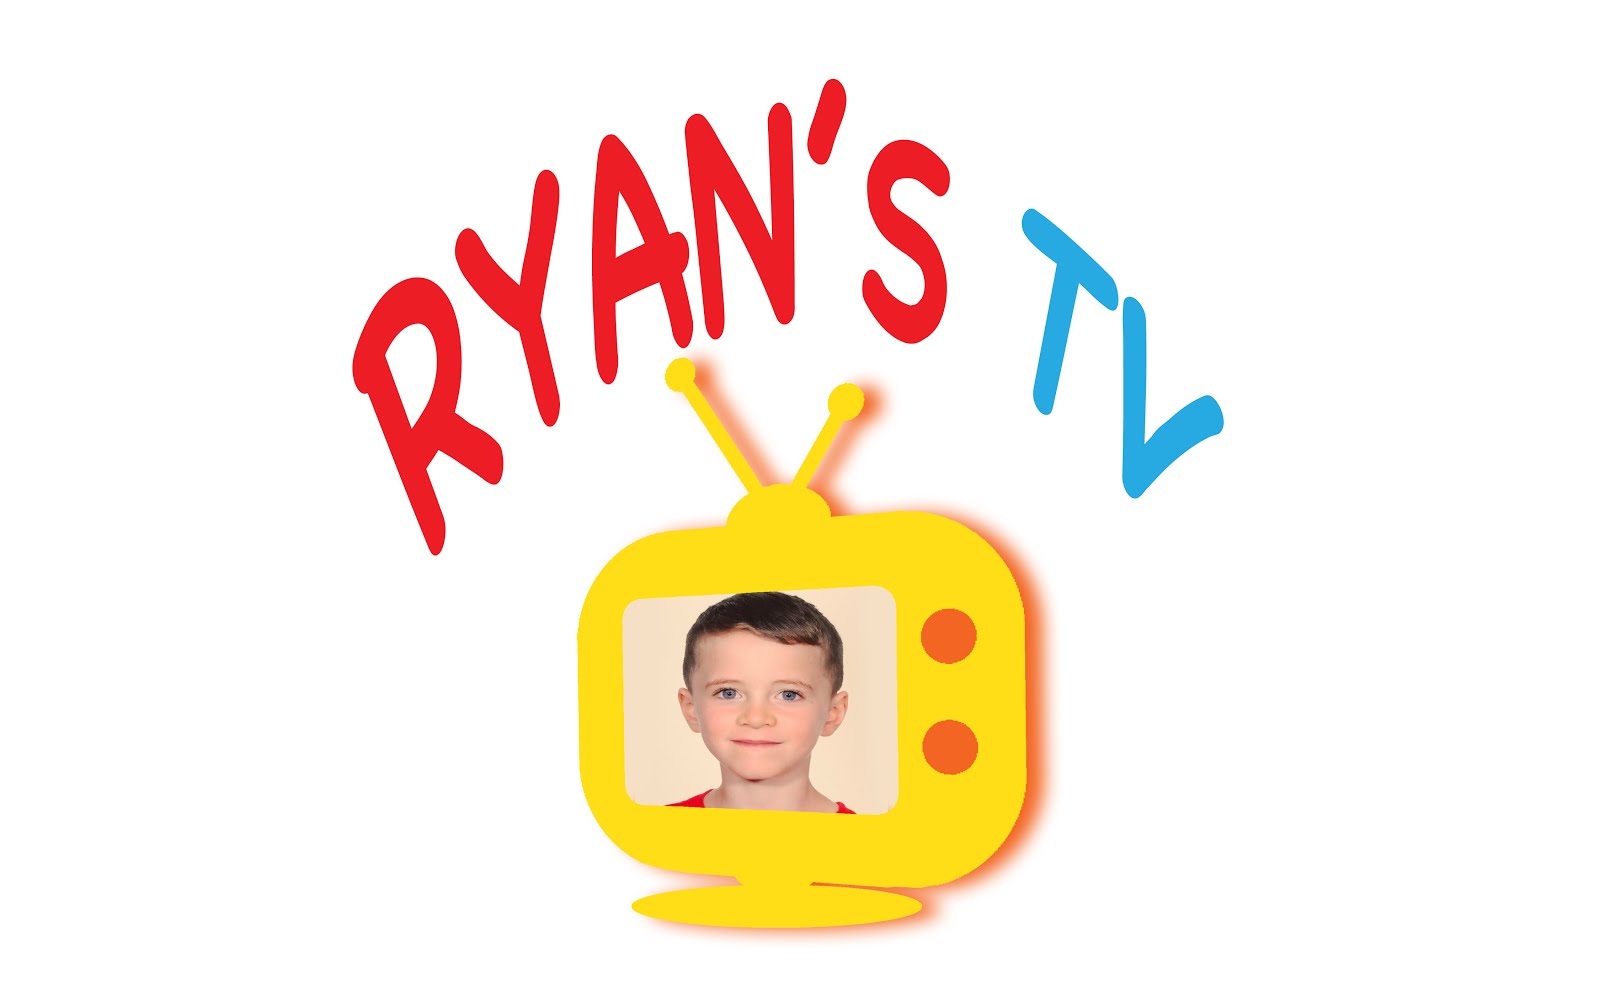 Ryan's TV